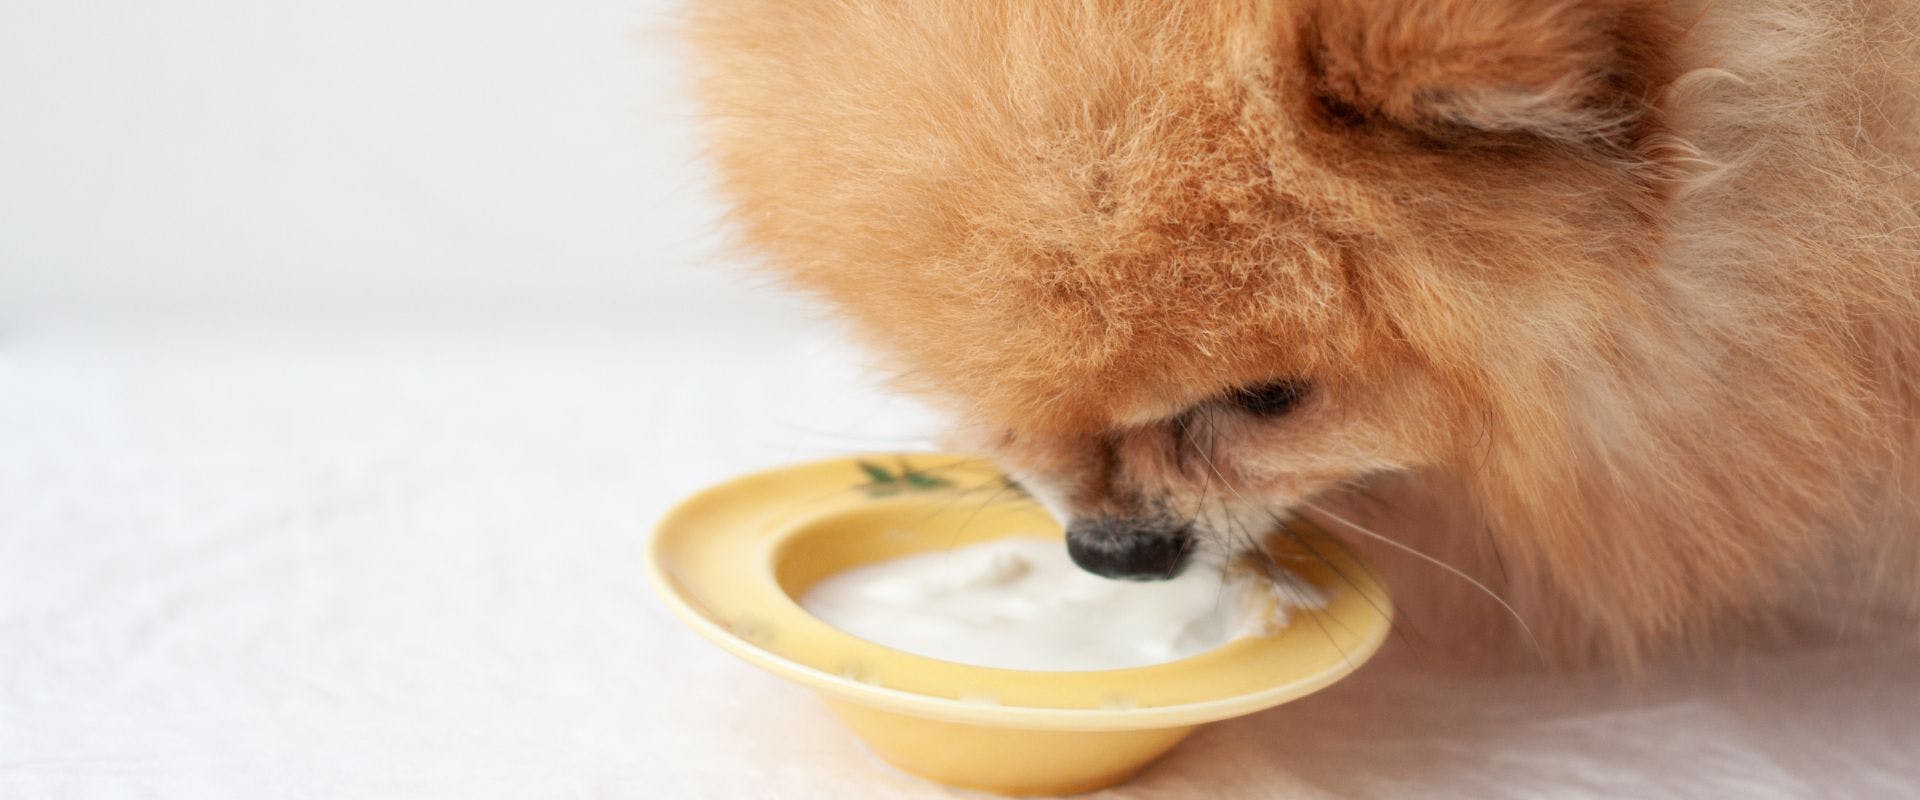 Pomeranian dog eating yogurt